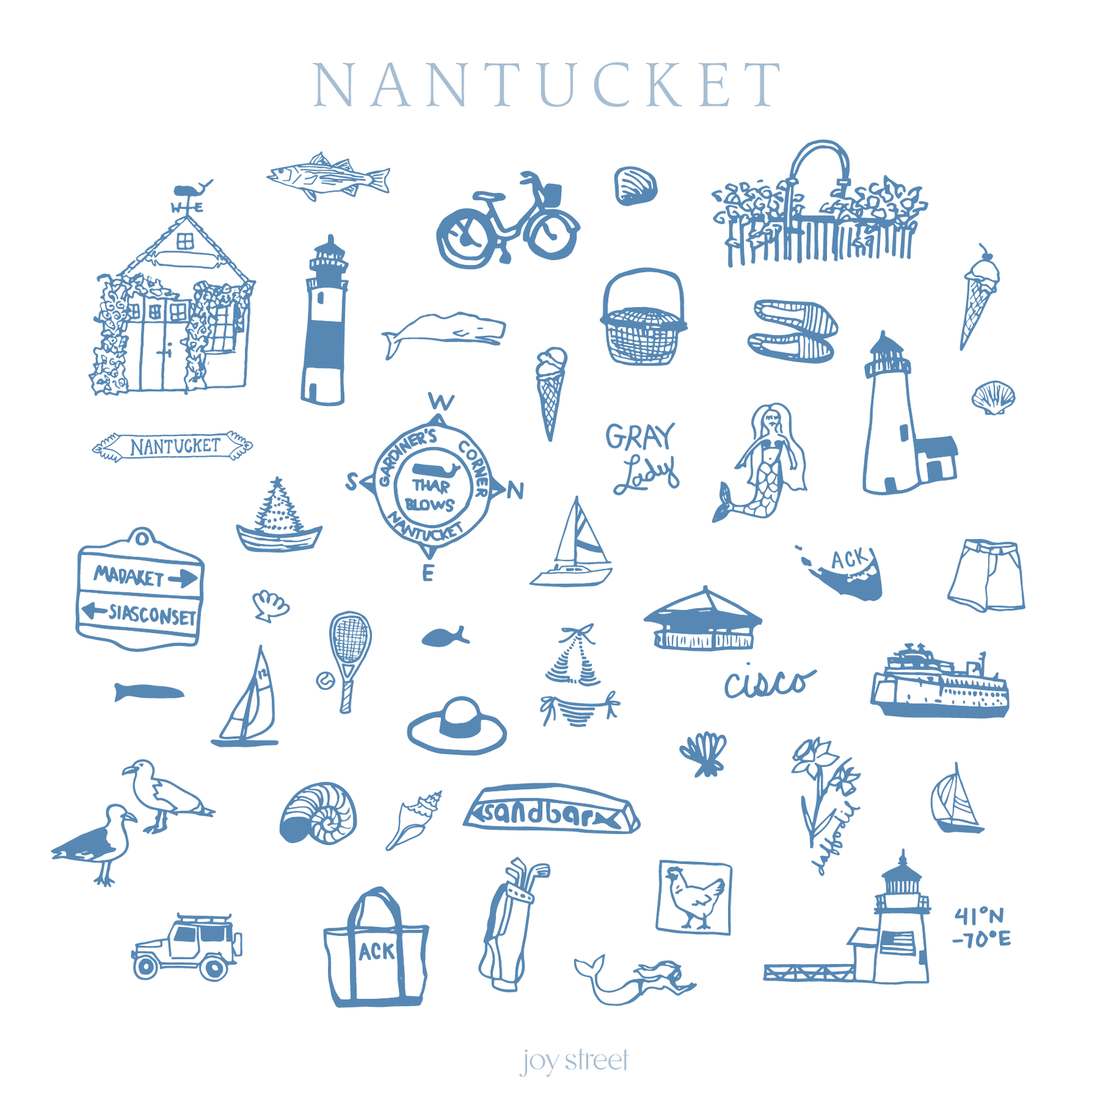 Nantucket print card joy street 